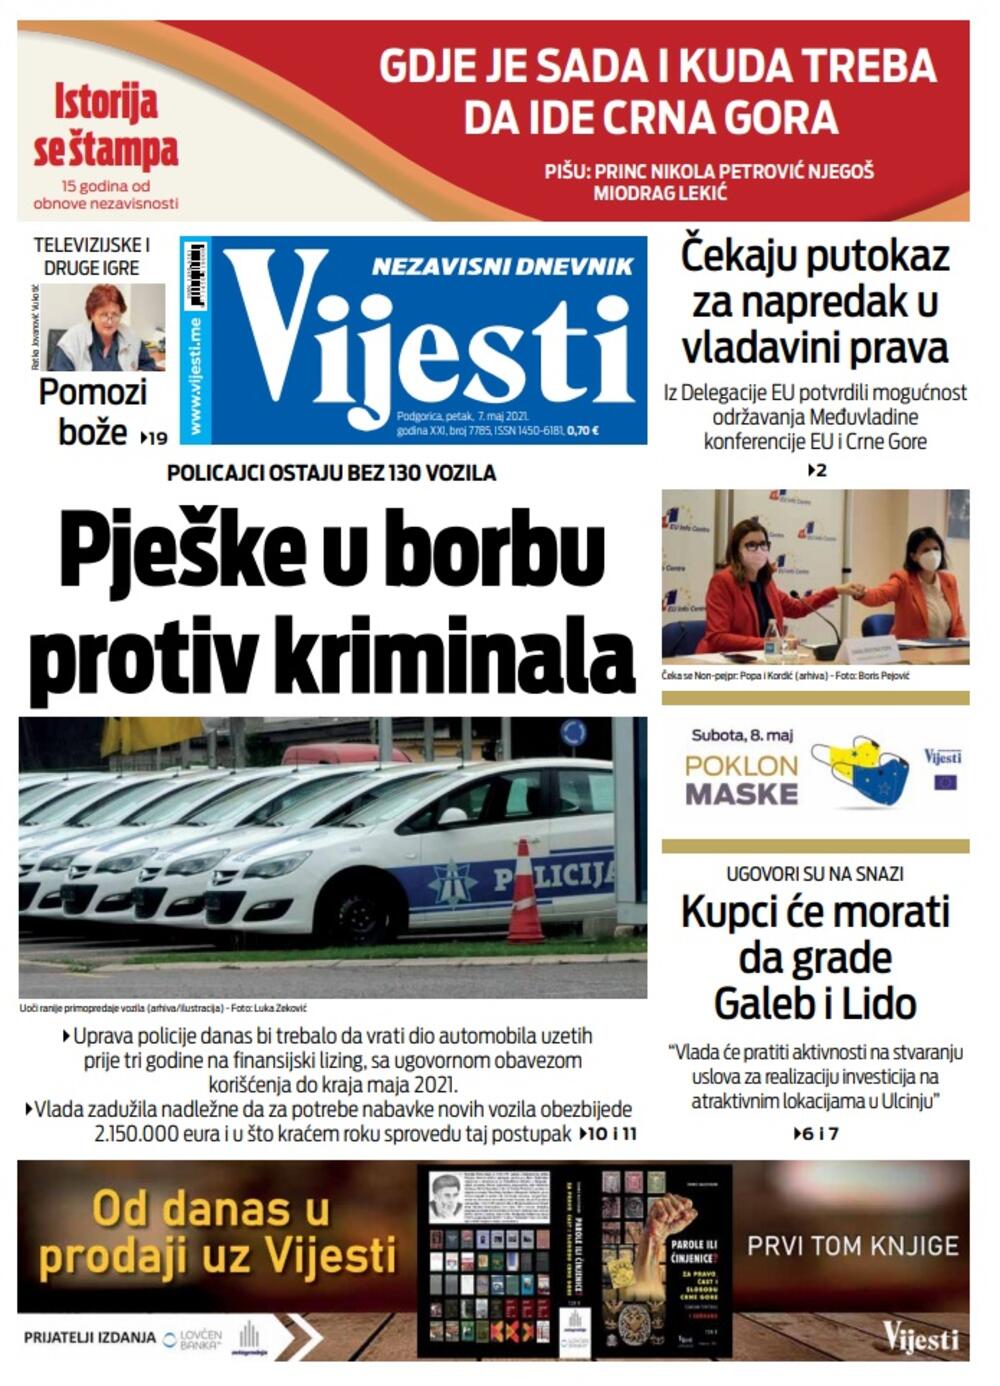 Naslovna strana "Vijesti" za petak 7. maj 2021. godine, Foto: Vijesti